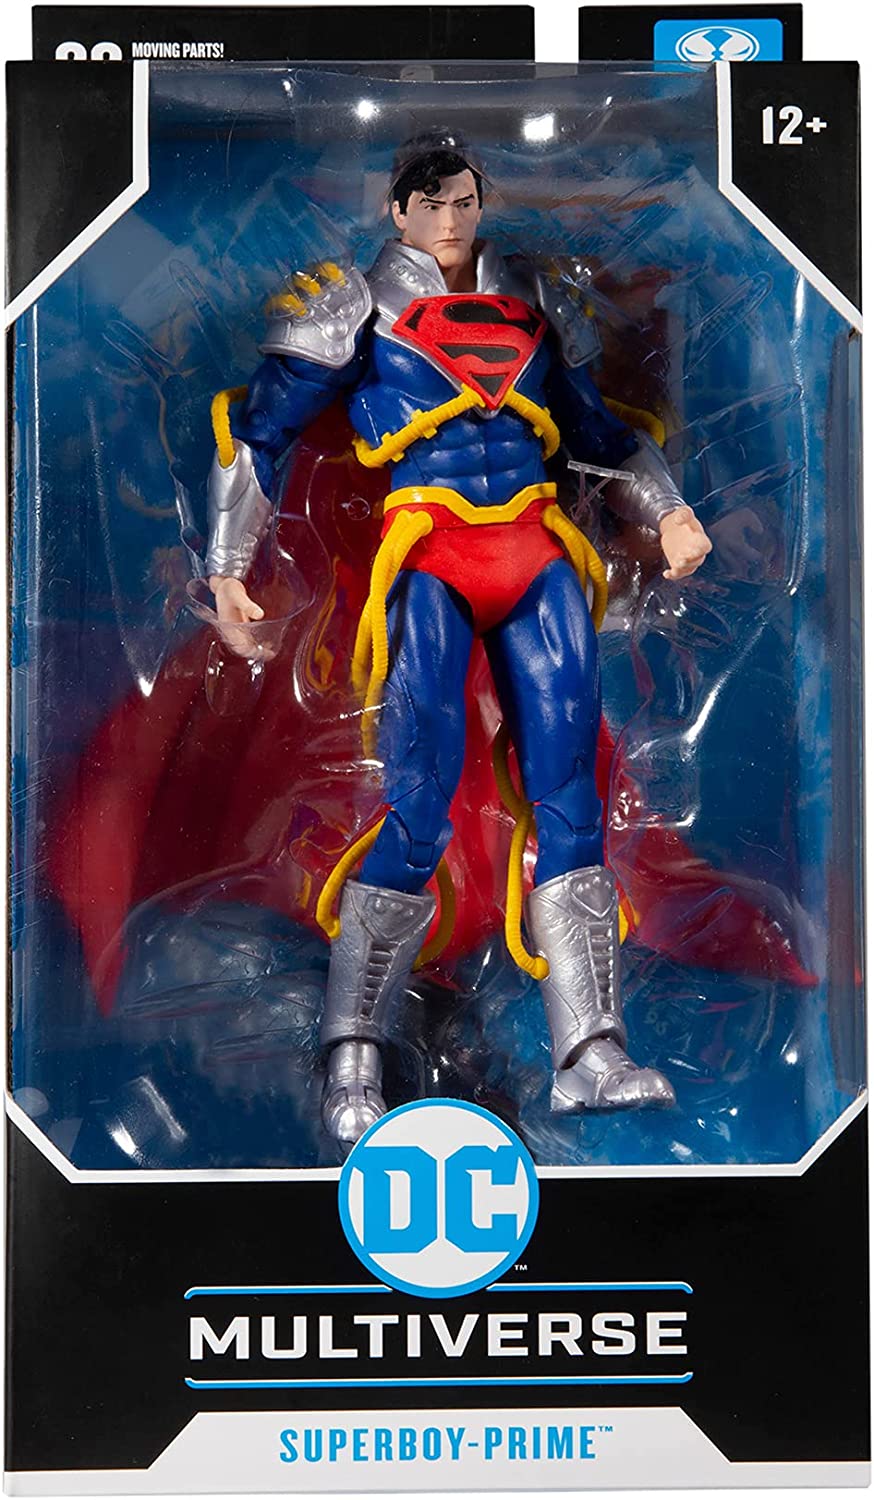 McFarlane Toys: DC Multiverse - Superboy-Prime, Infinite Crisis - Third Eye